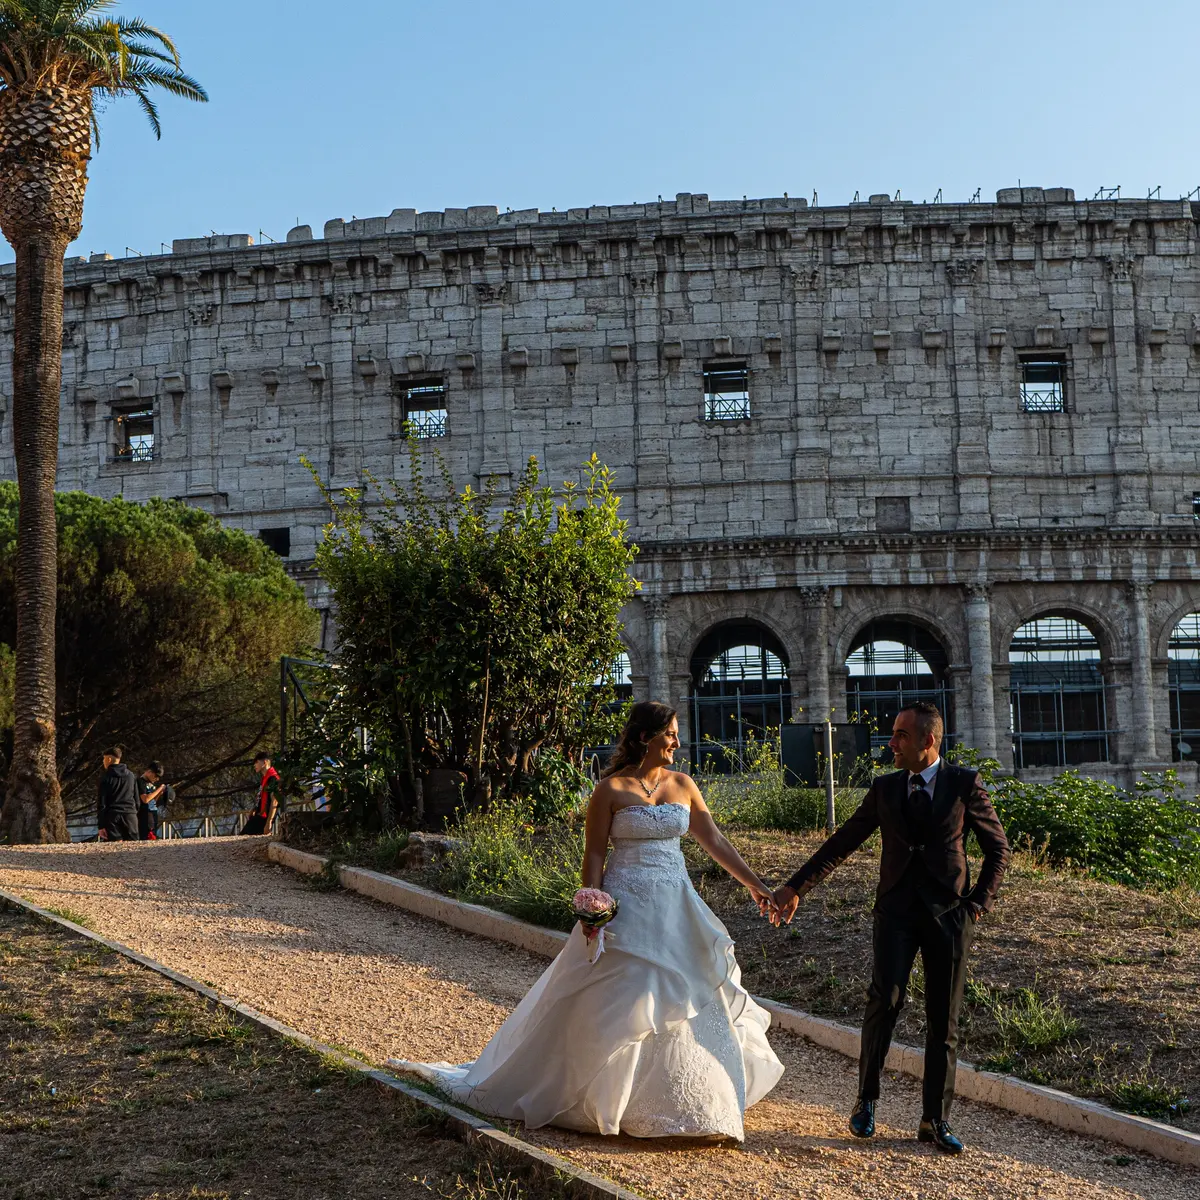 Du khách được tặng 50 triệu đồng khi kết hôn tại 'thành phố Vĩnh cửu' ở Italia